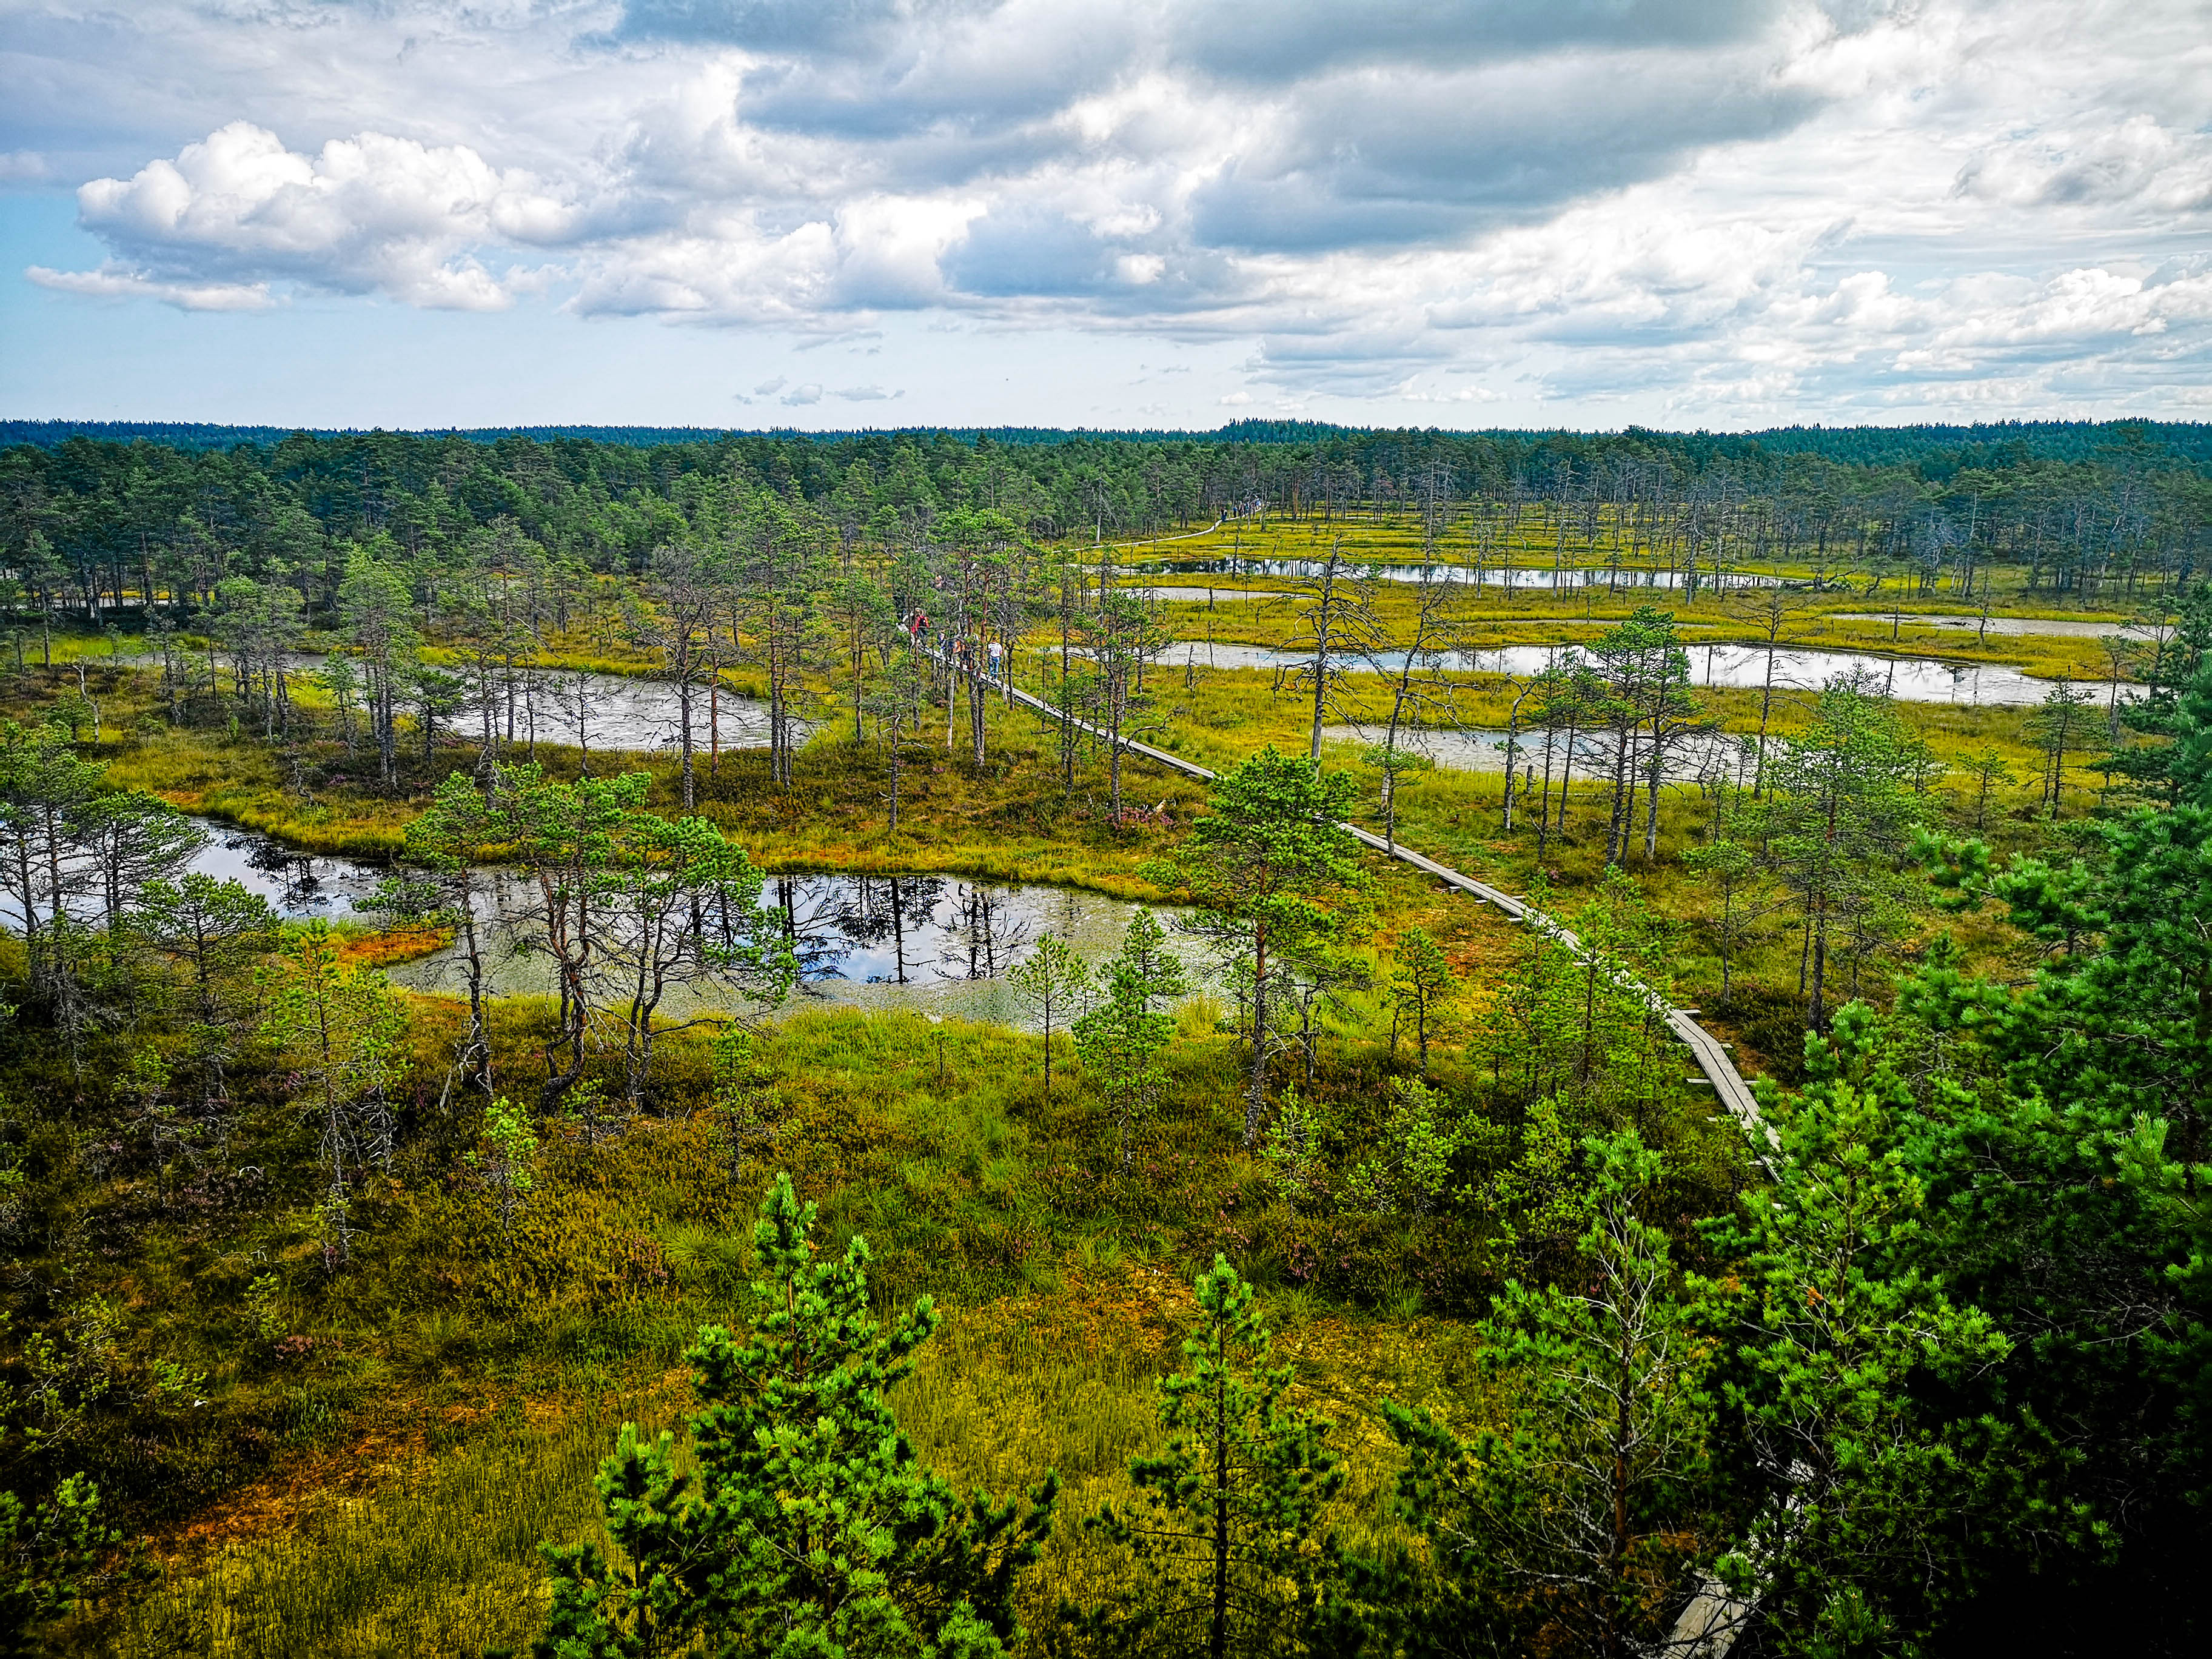 ©J. Leppmets - Visit Estonian bogs! Viru bog